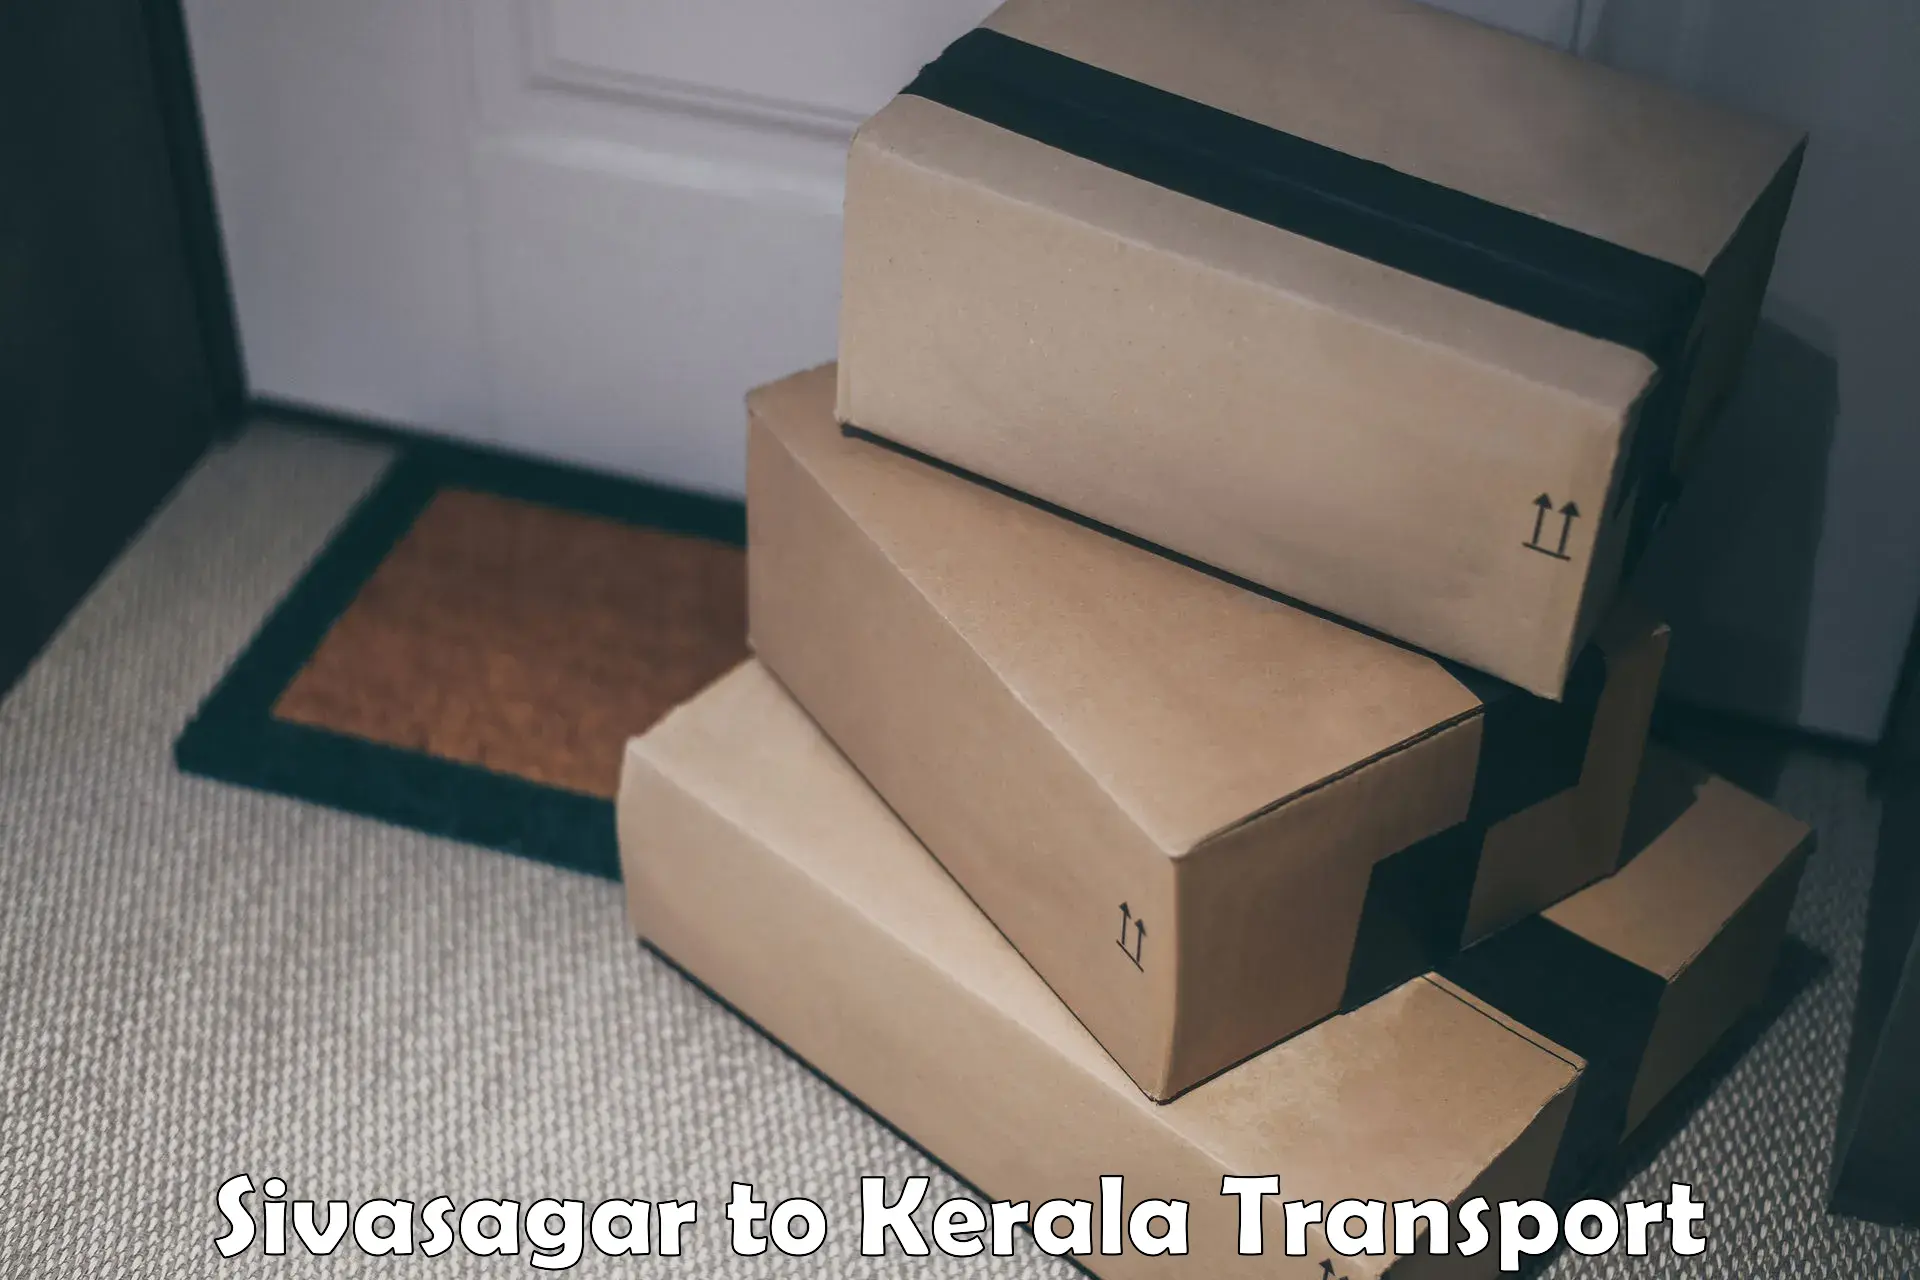 Transport in sharing Sivasagar to Kuchi